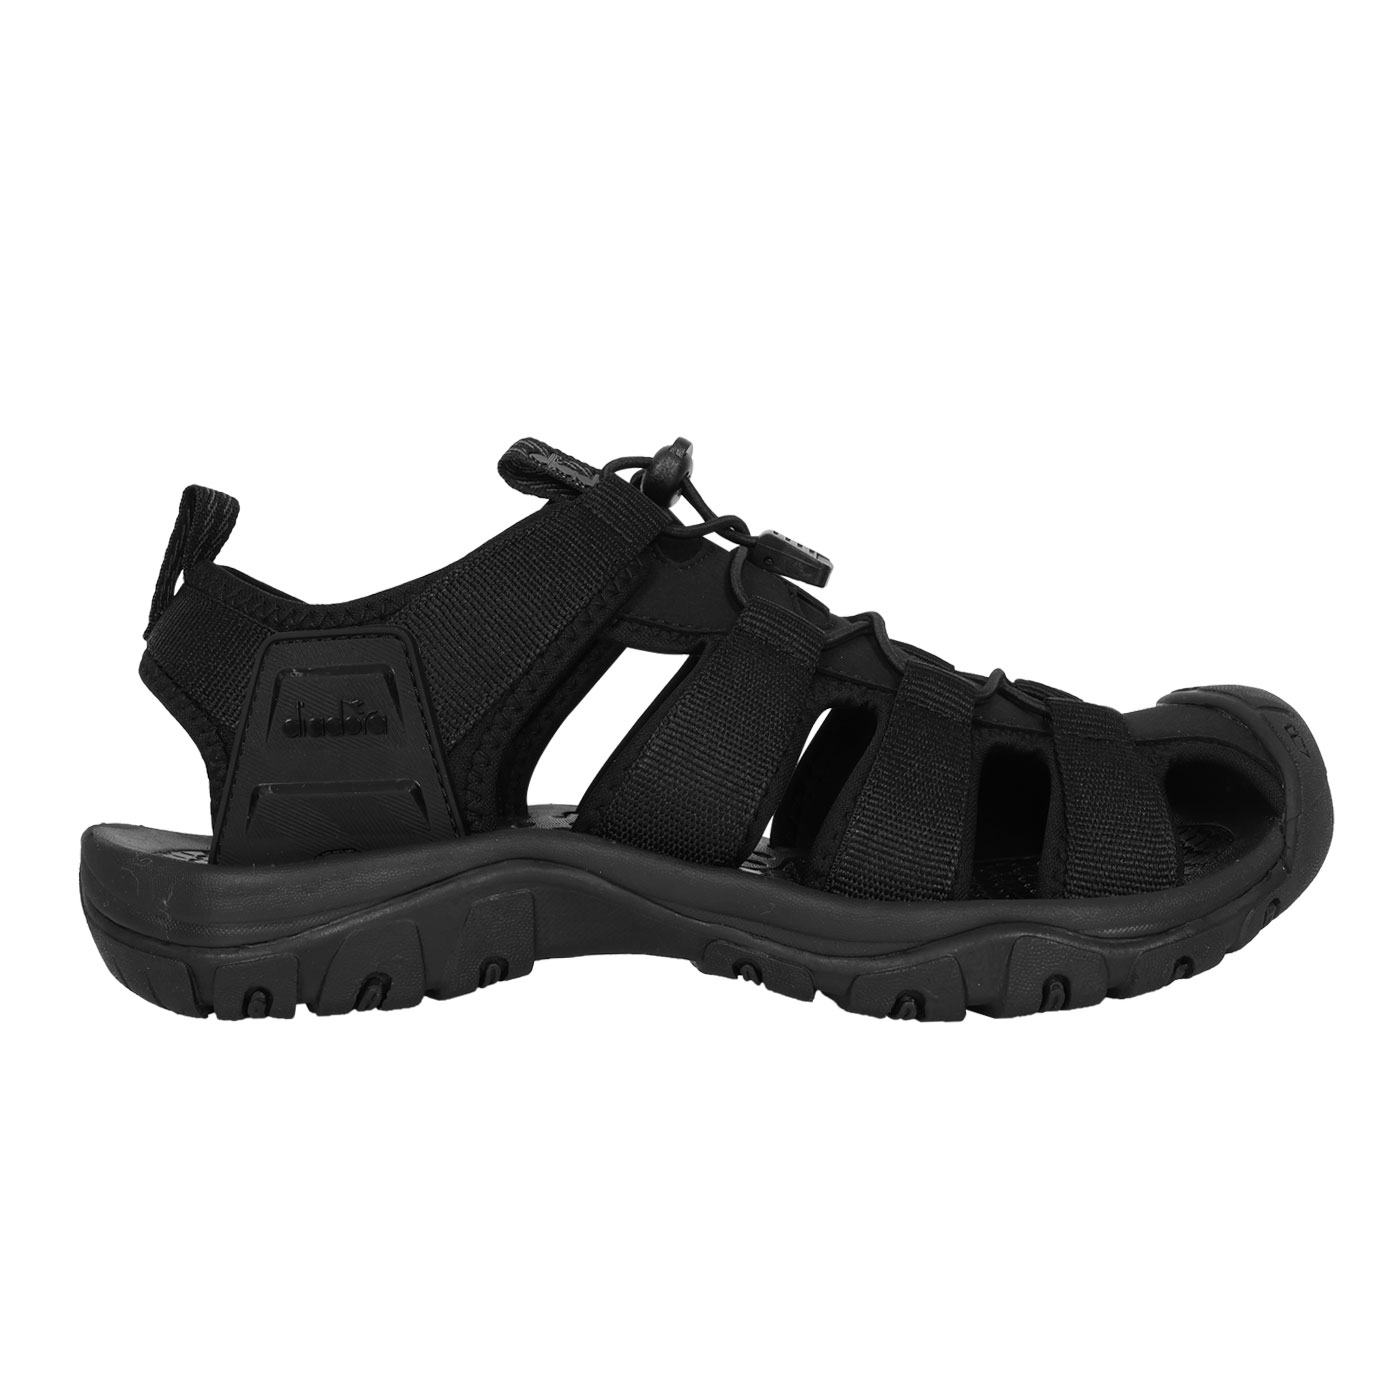 DIADORA 男款護趾運動涼鞋  DA71553 - 黑